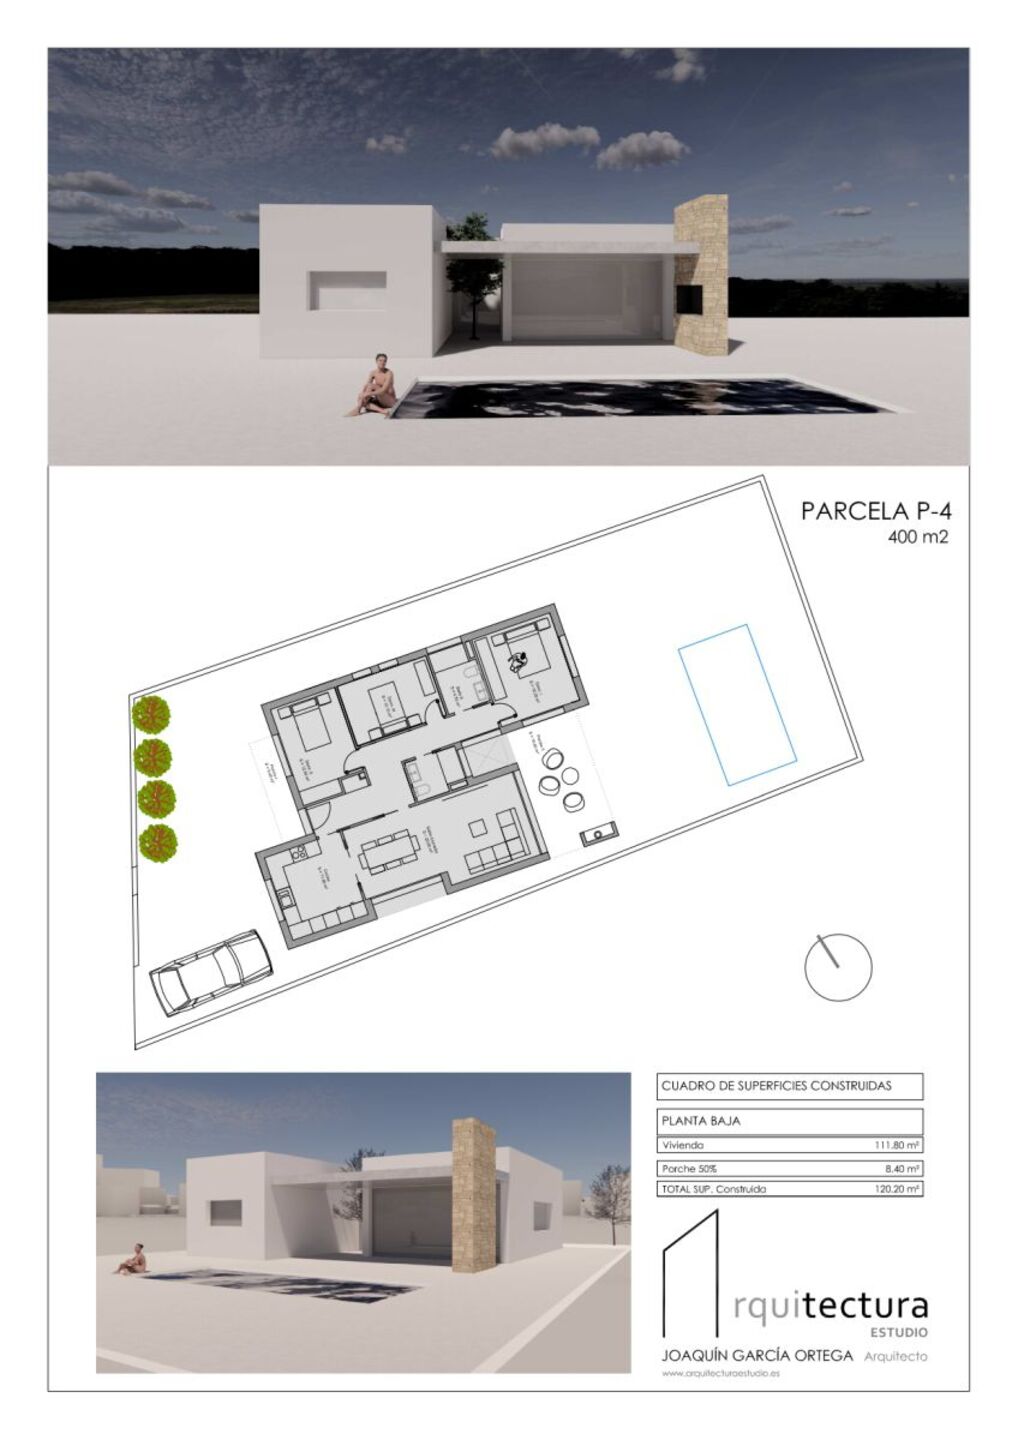 R22243: Terreno Urbano en venta en Huercal-Overa, Almería